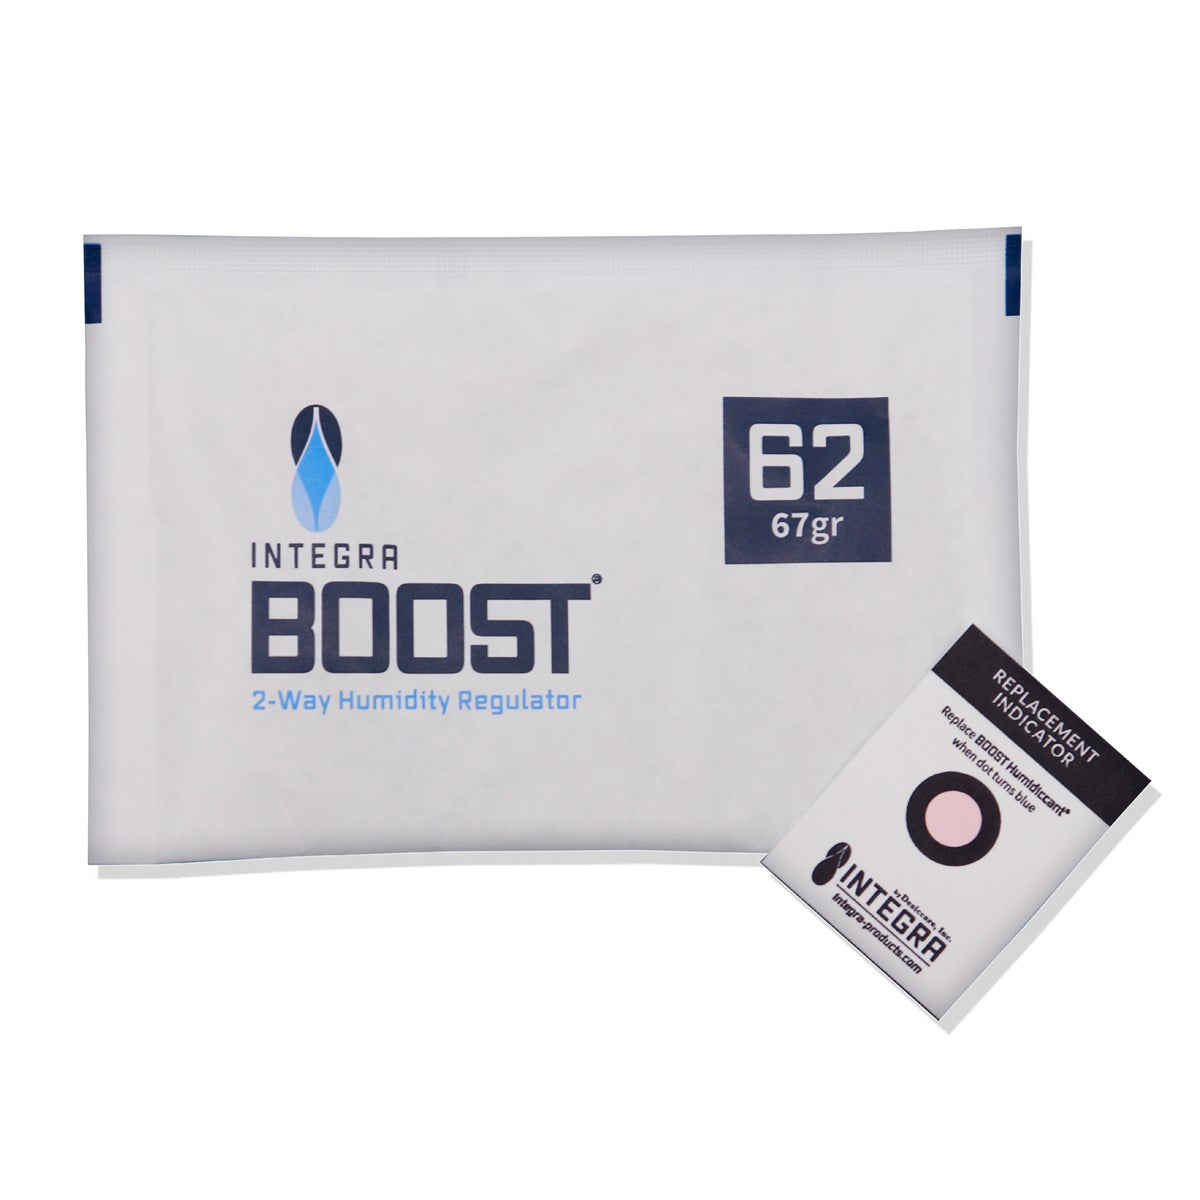 Integra Boost  2-Way Humidity Regulator